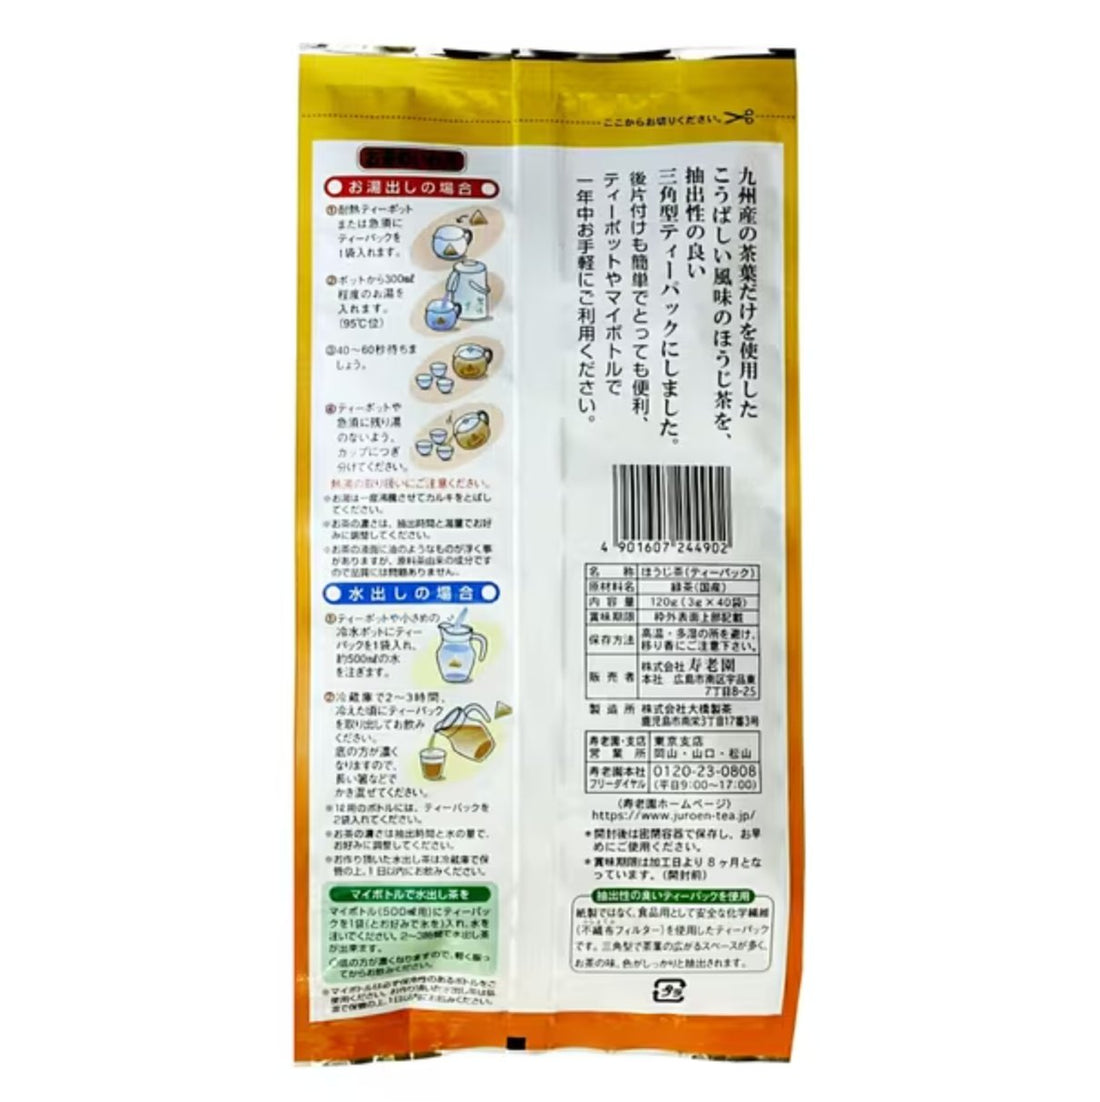 Juroen Kyushu Hojicha Triangular Tea Pack 3g x 40 bags - NihonMura